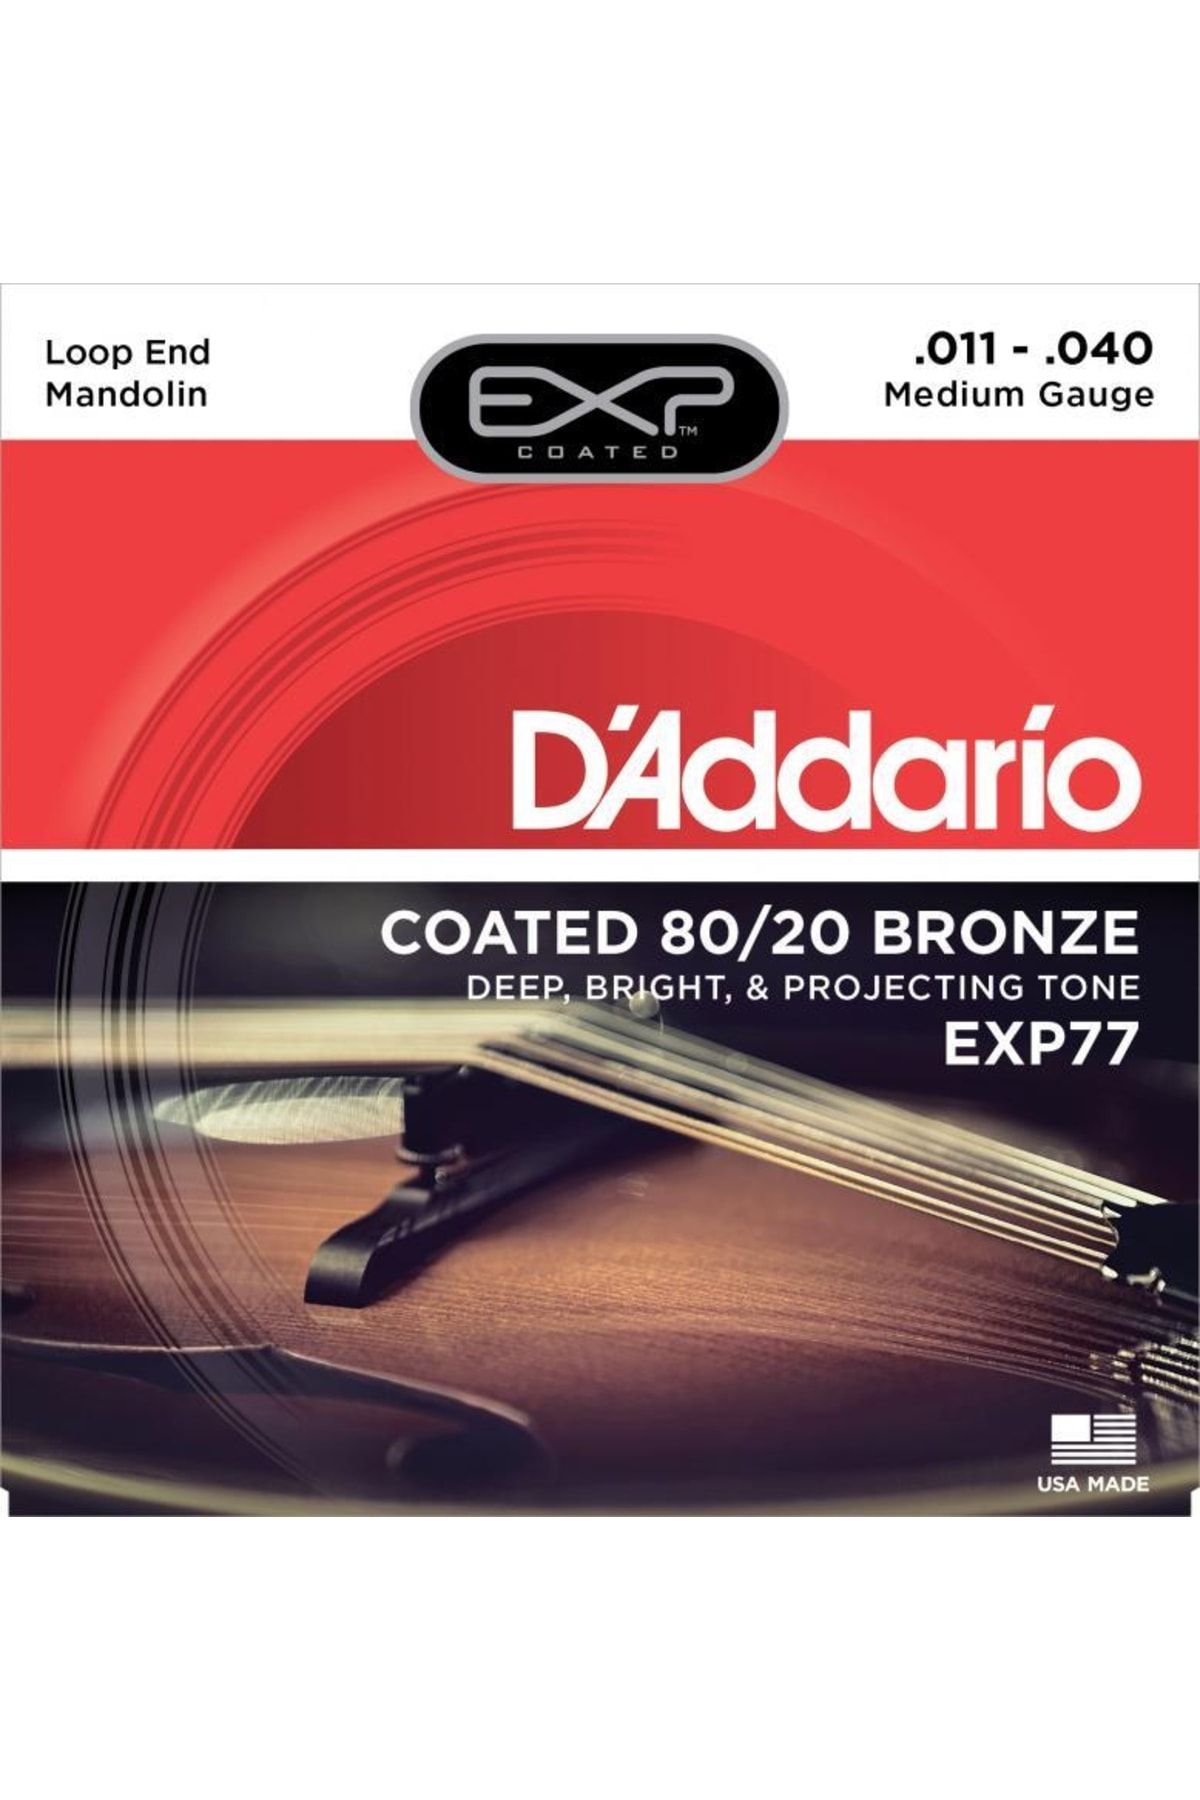 D'Addario Exp77 Bronze Mandolin Strings